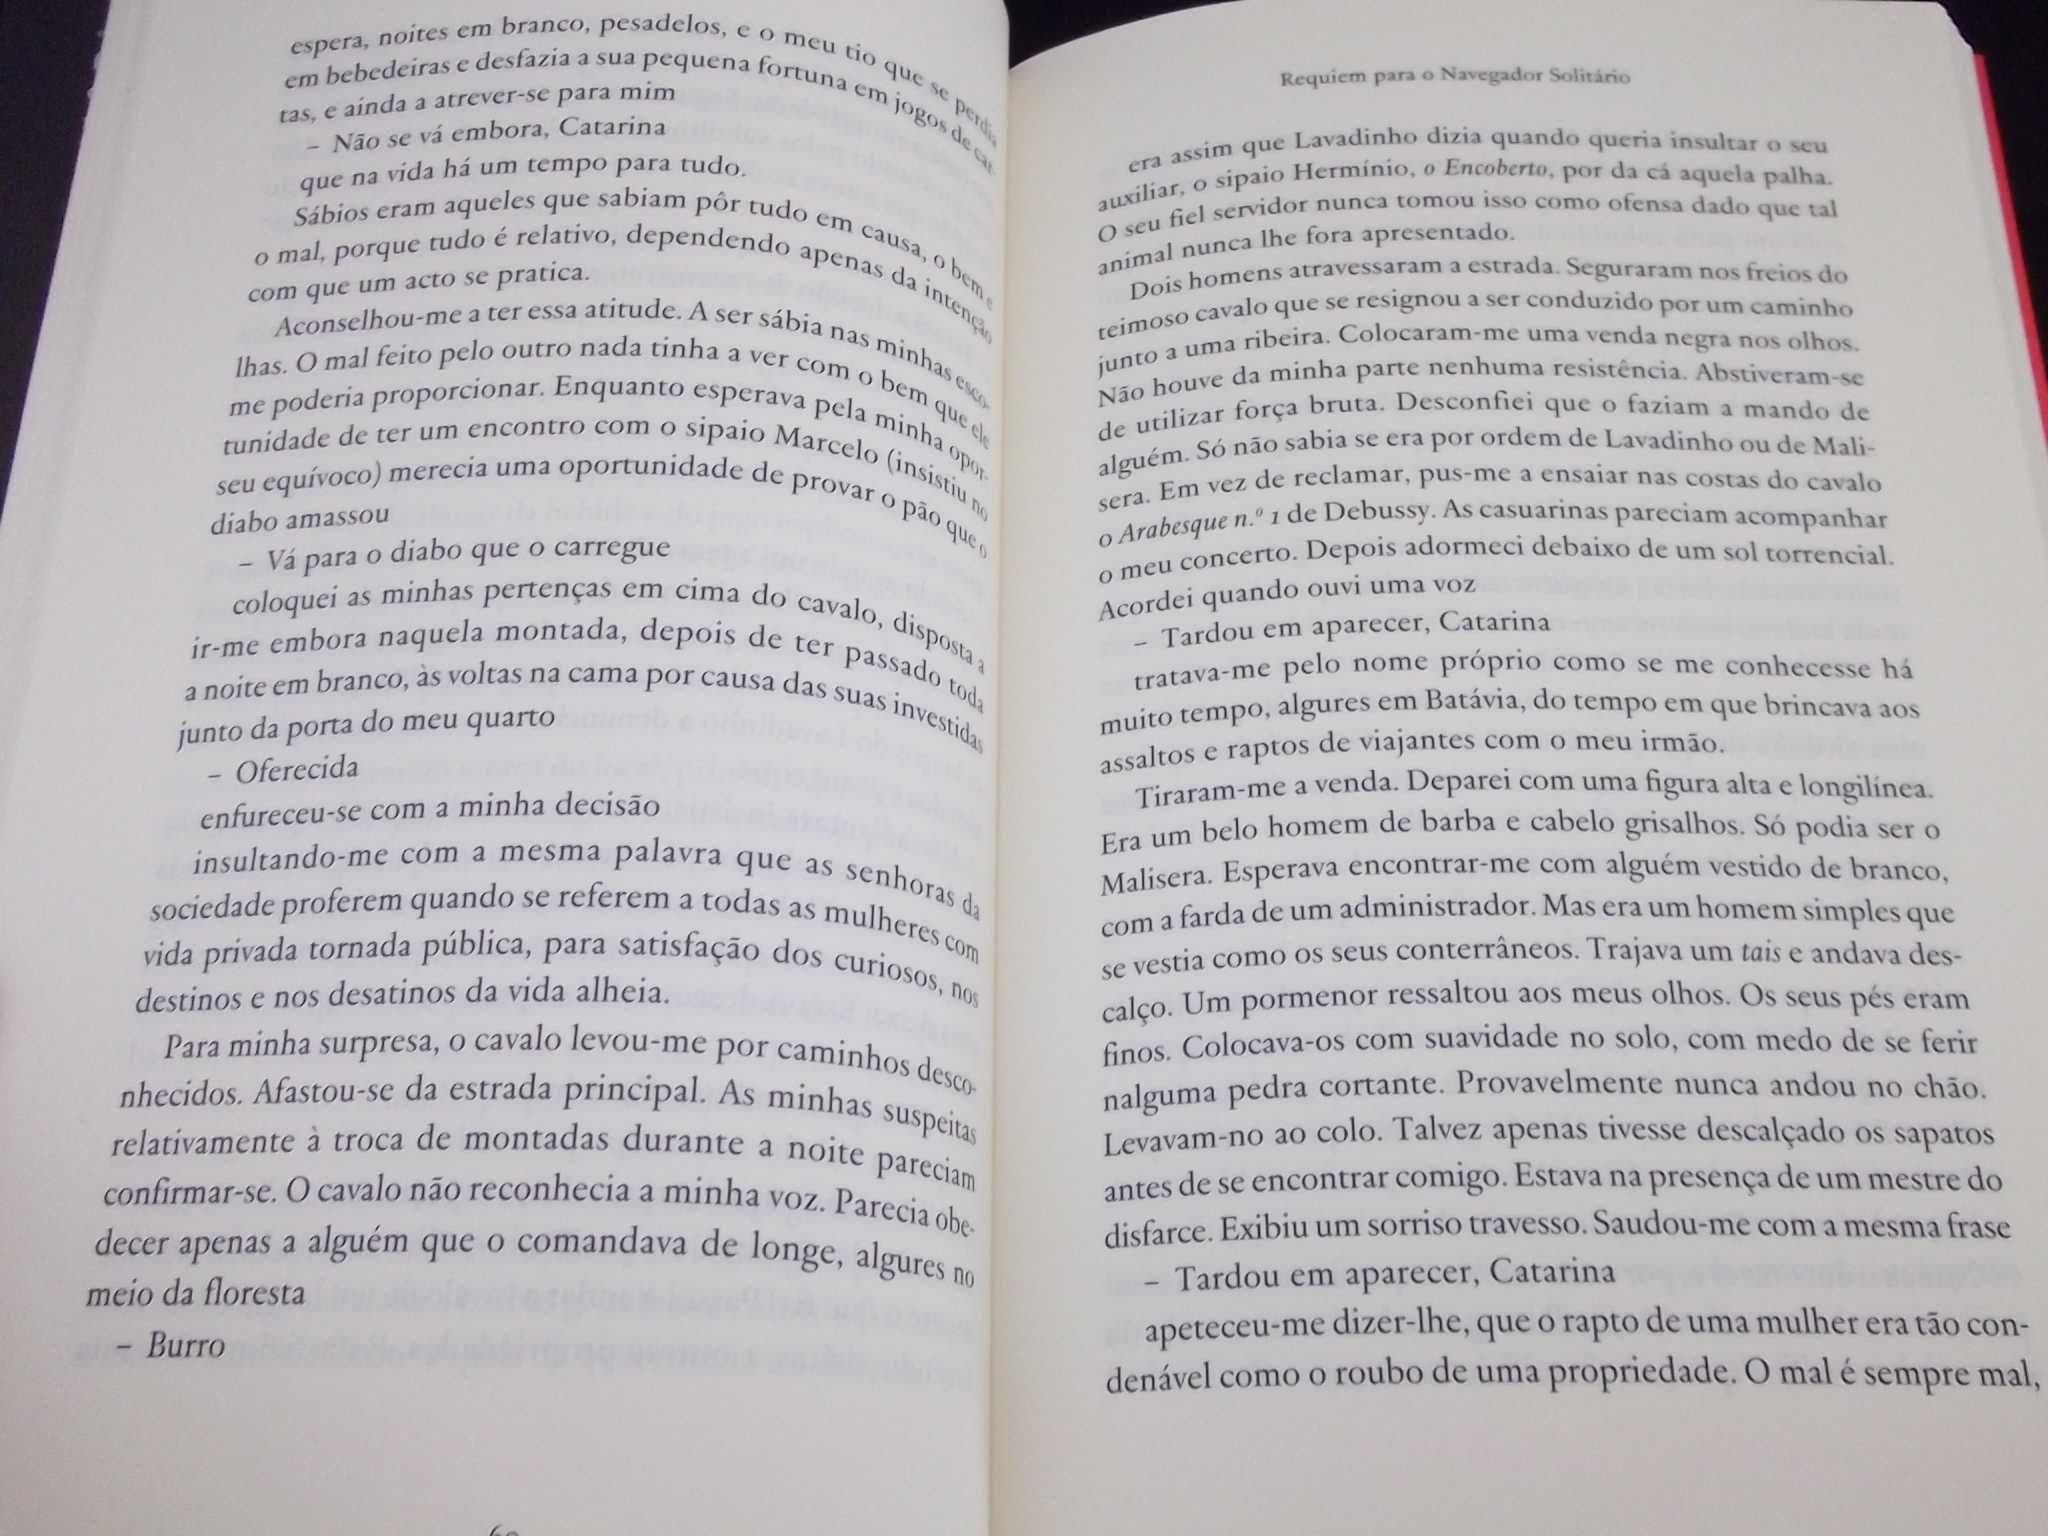 Livro Requiem para o navegador solitário Luís Cardoso 1ªed Autografado